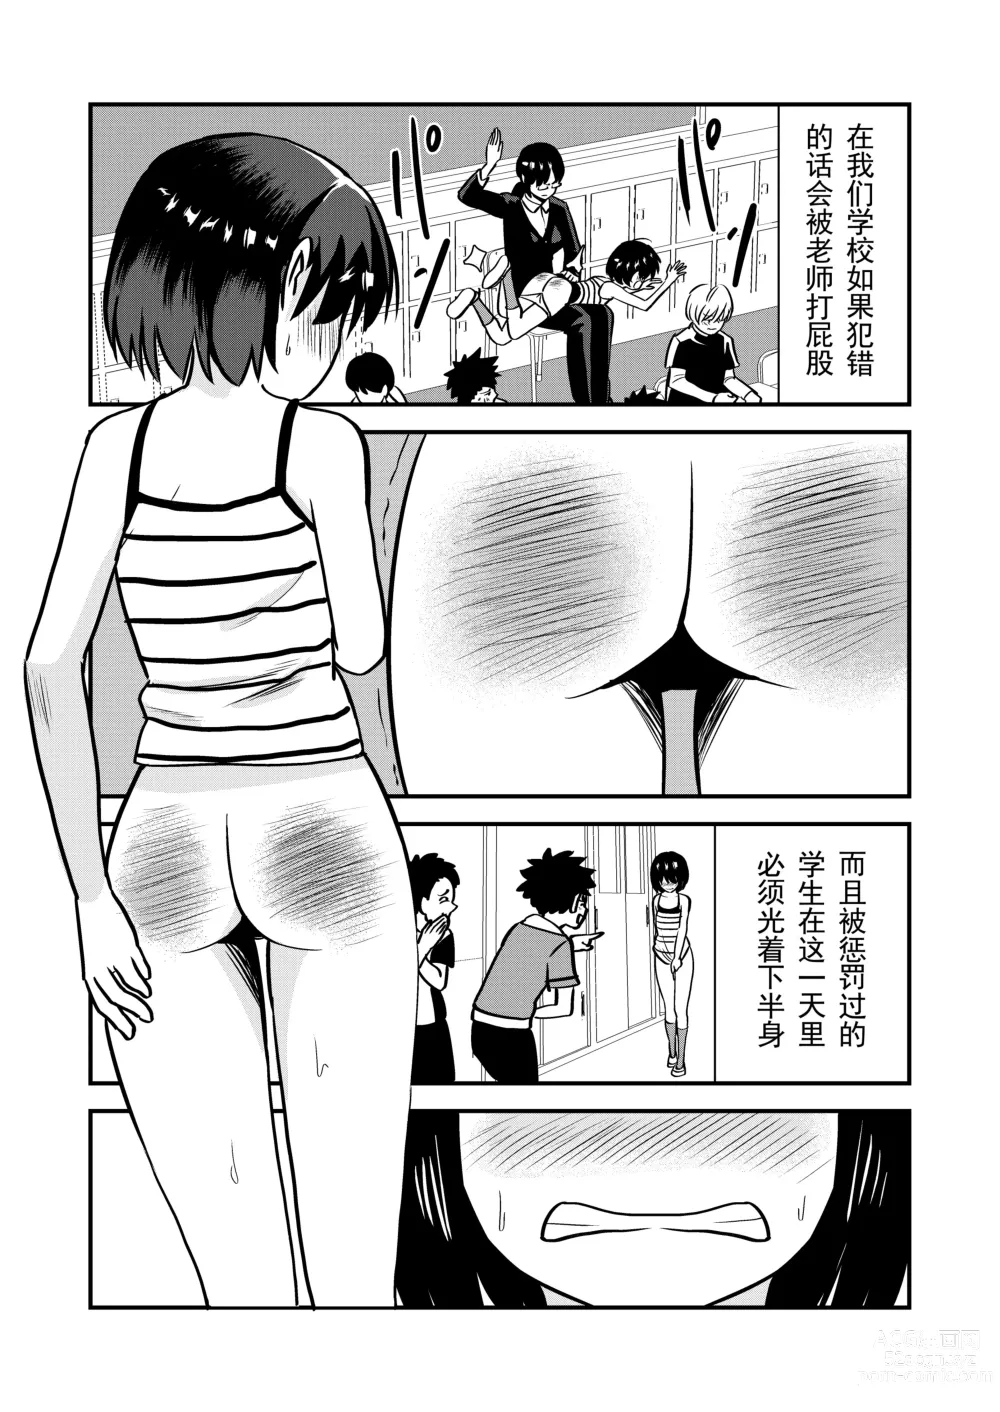 Page 2 of doujinshi 被惩罚后的当天,下半身禁止穿衣服的学校